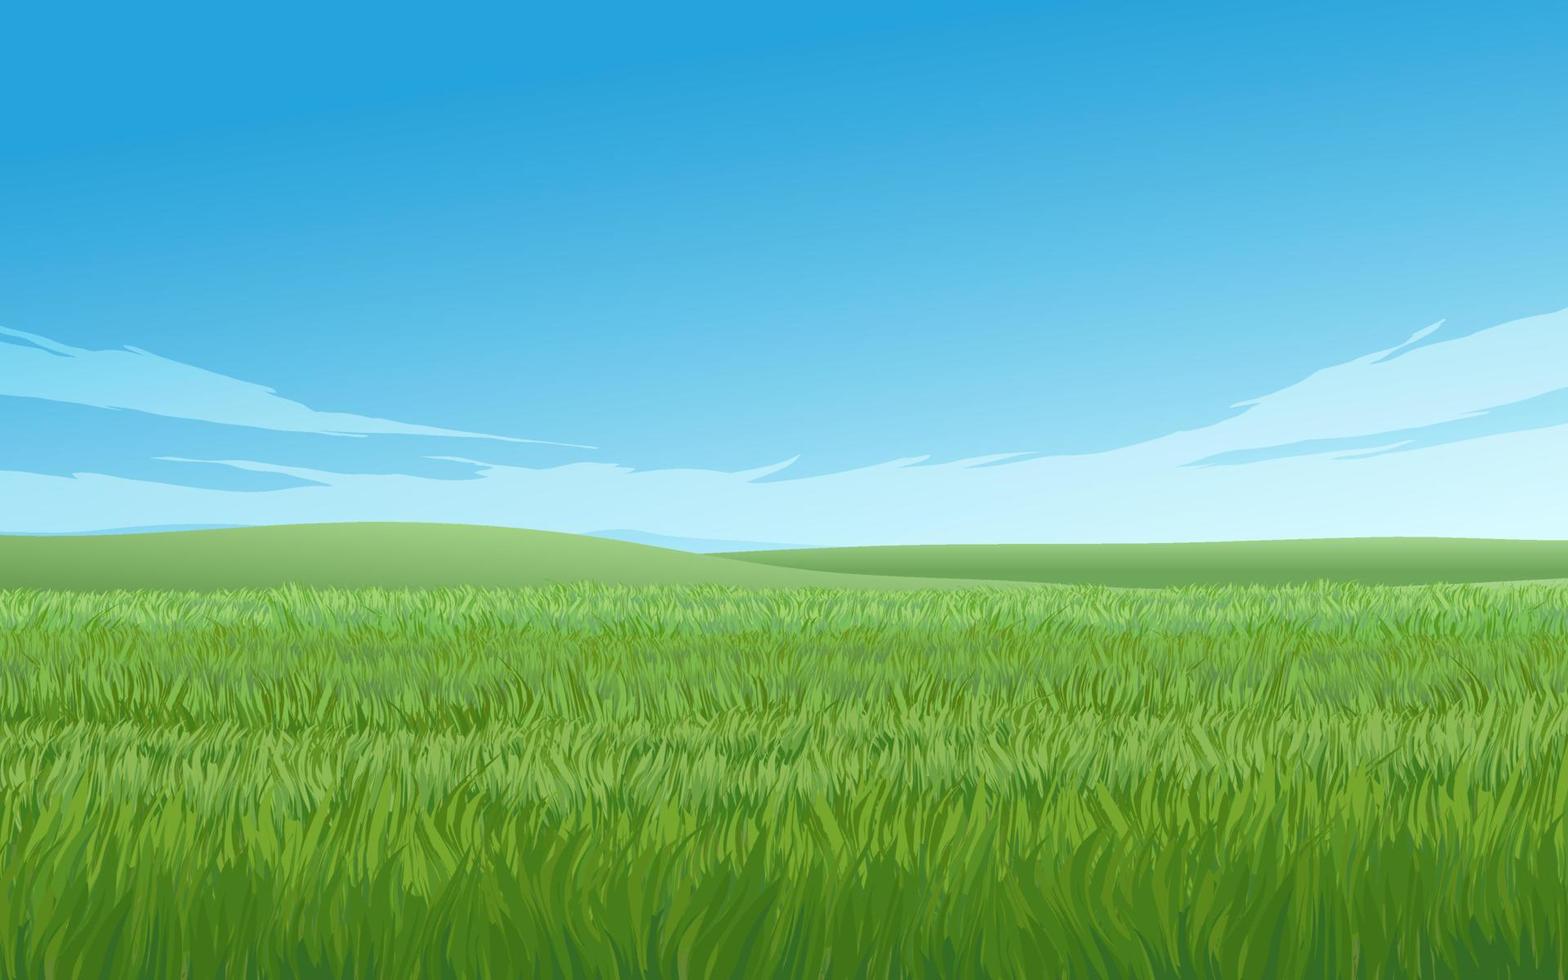 gräsmark landskap illustration på solig dag vektor